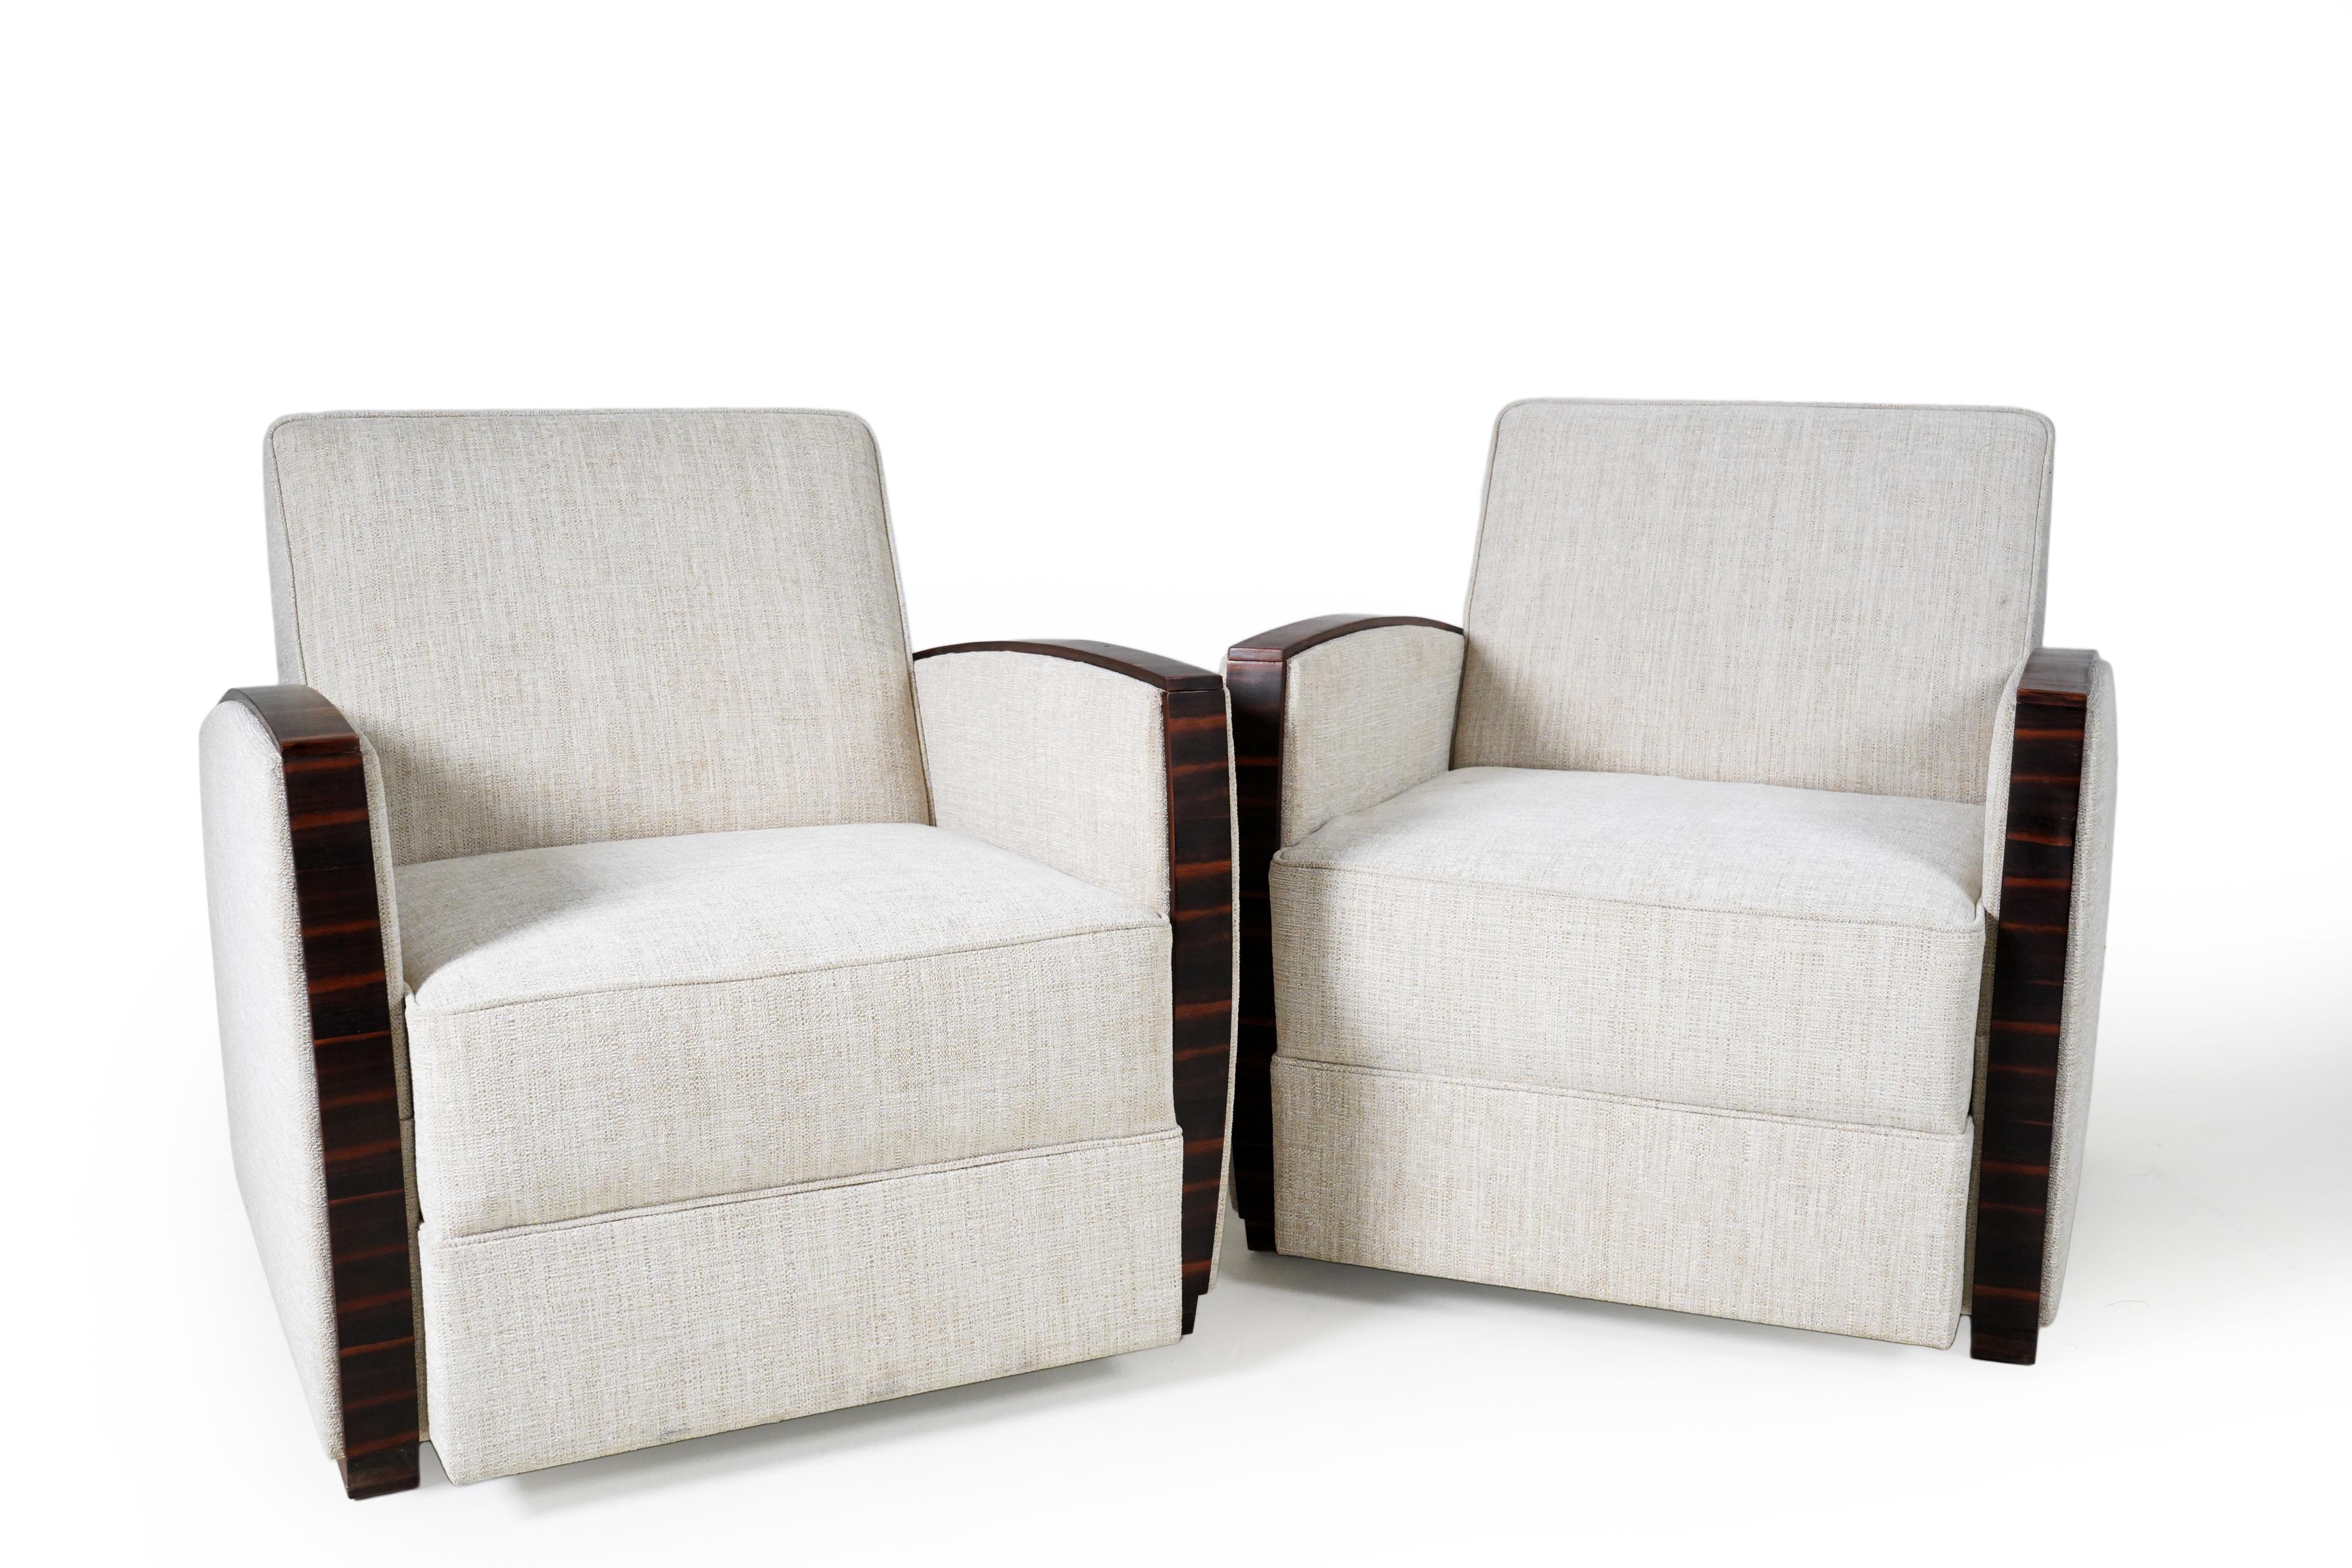 Ces fauteuils sculpturaux et légèrement volumineux sont des copies modernes d'originaux hongrois des années 1930. Le riche placage de noyer apporte un accent élégant aux sièges rembourrés et aux surfaces extérieures. Ces chaises sont confortables et